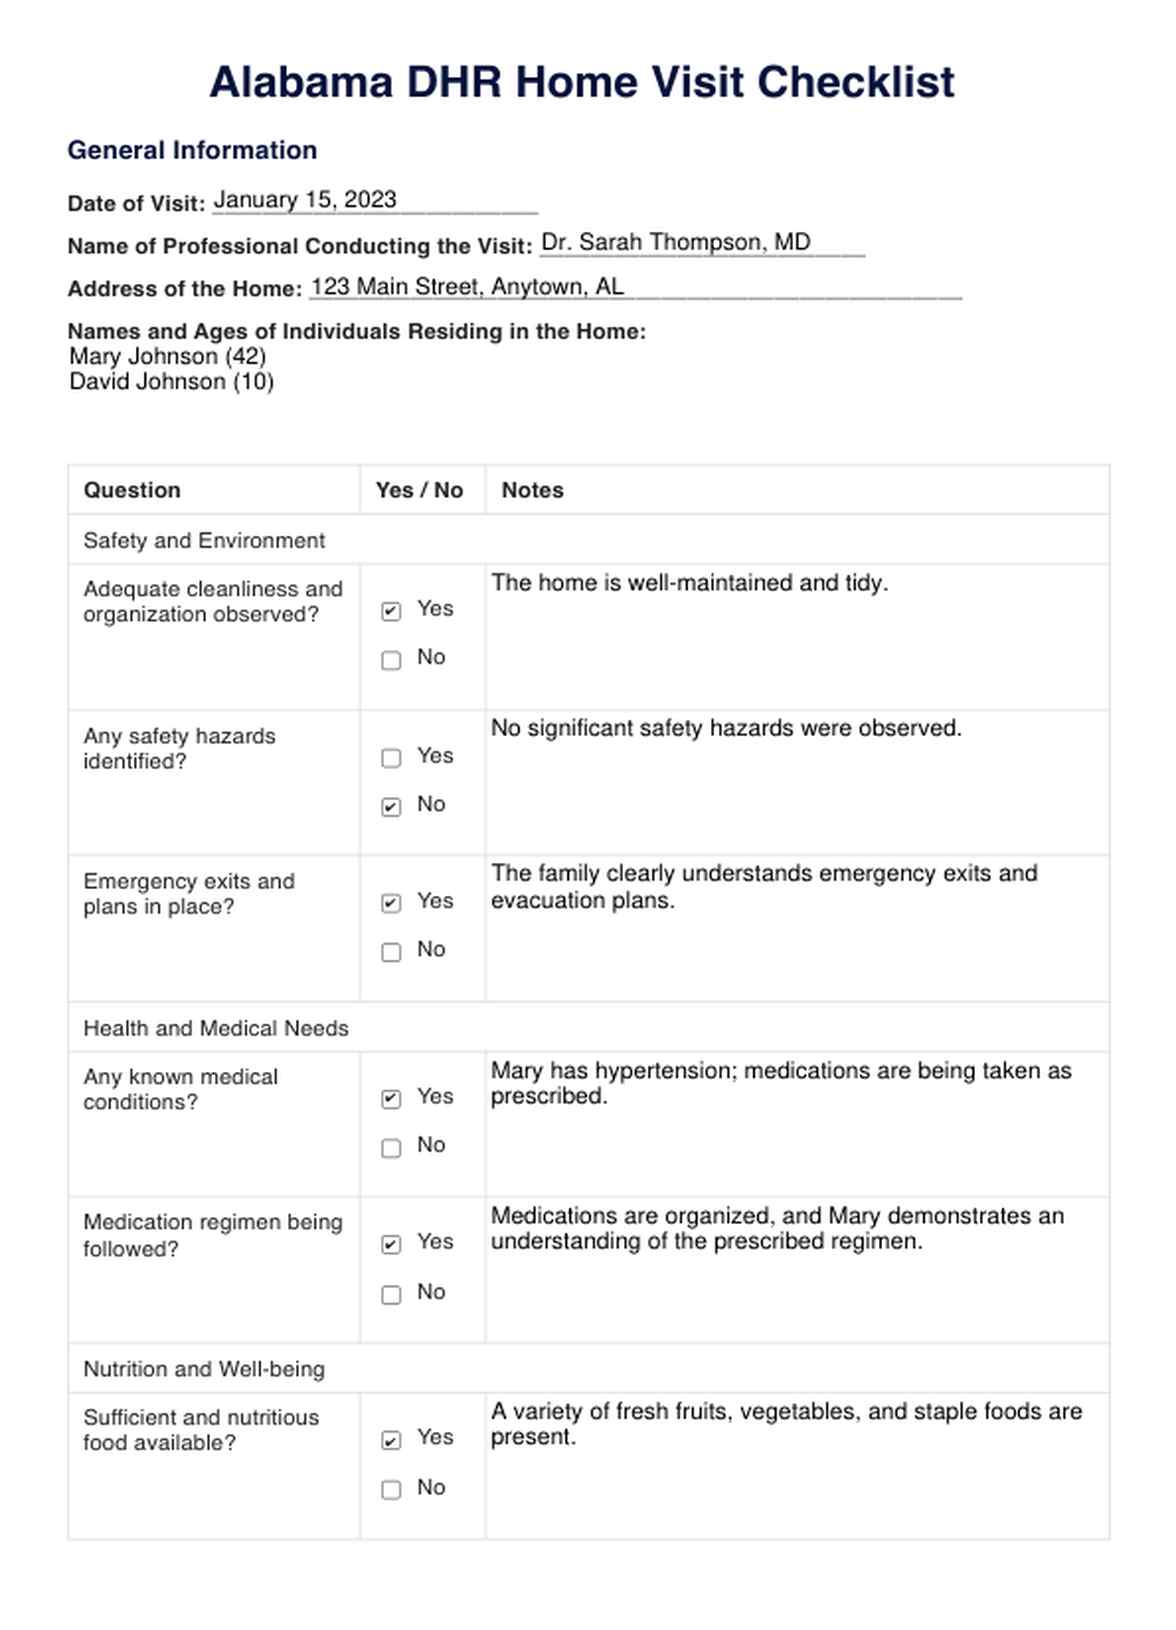 Alabama DHR Home Visit Checklist PDF Example